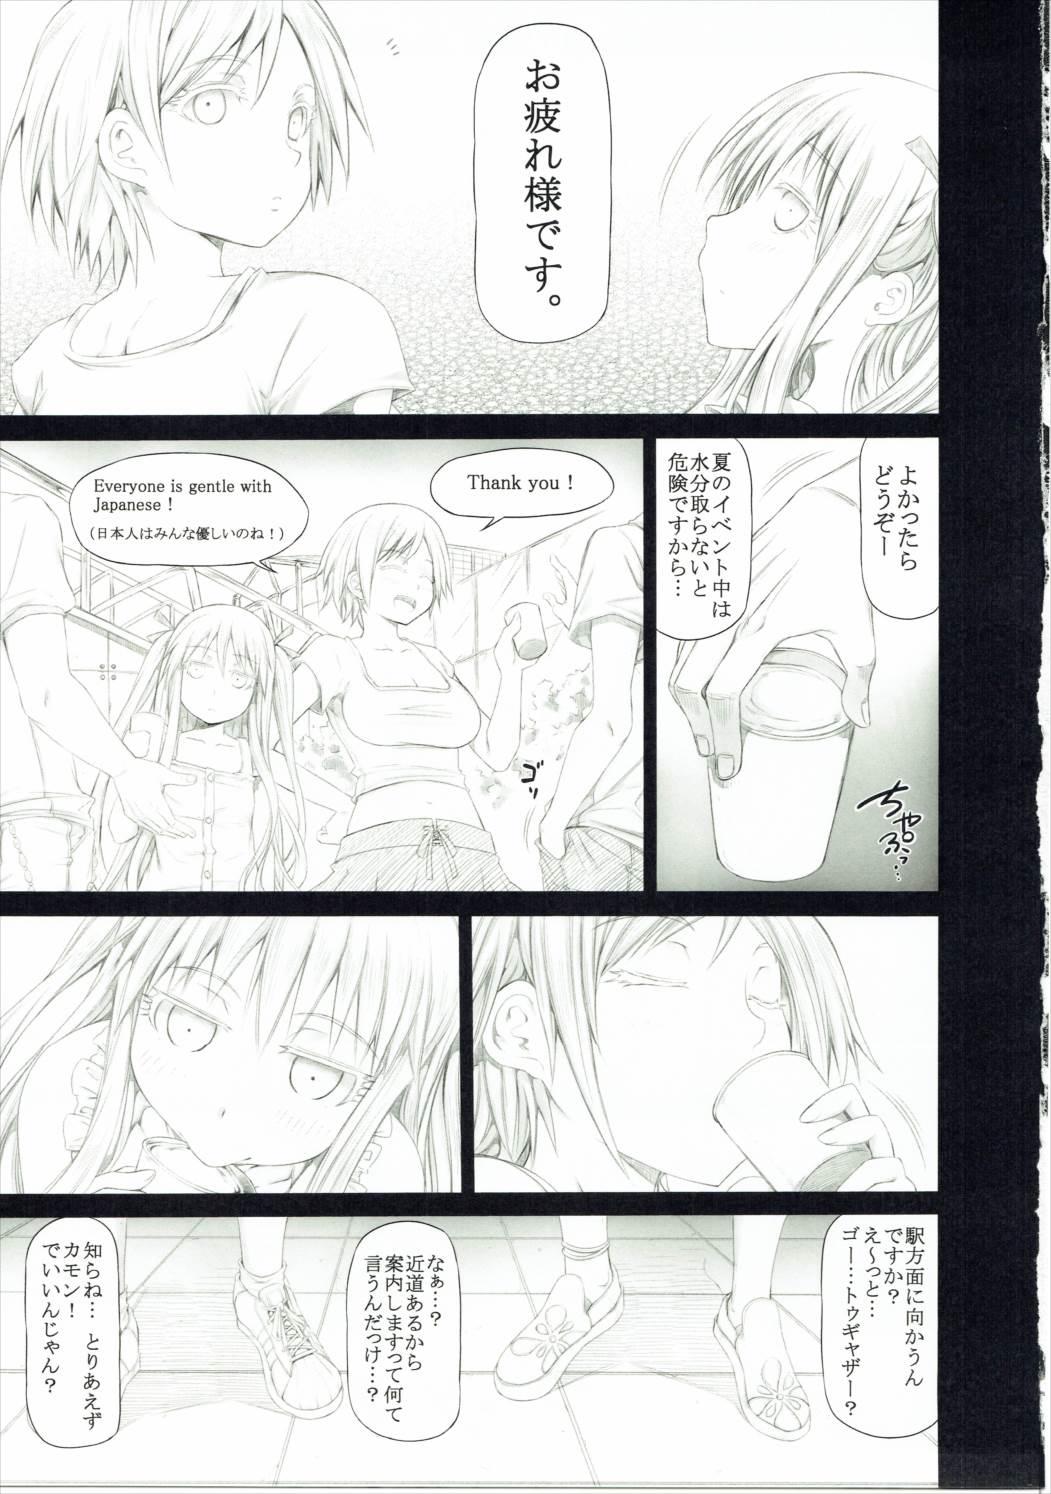 Young Tits Angela to Su- ga Heya ni Iru. - Genshiken Soloboy - Page 2